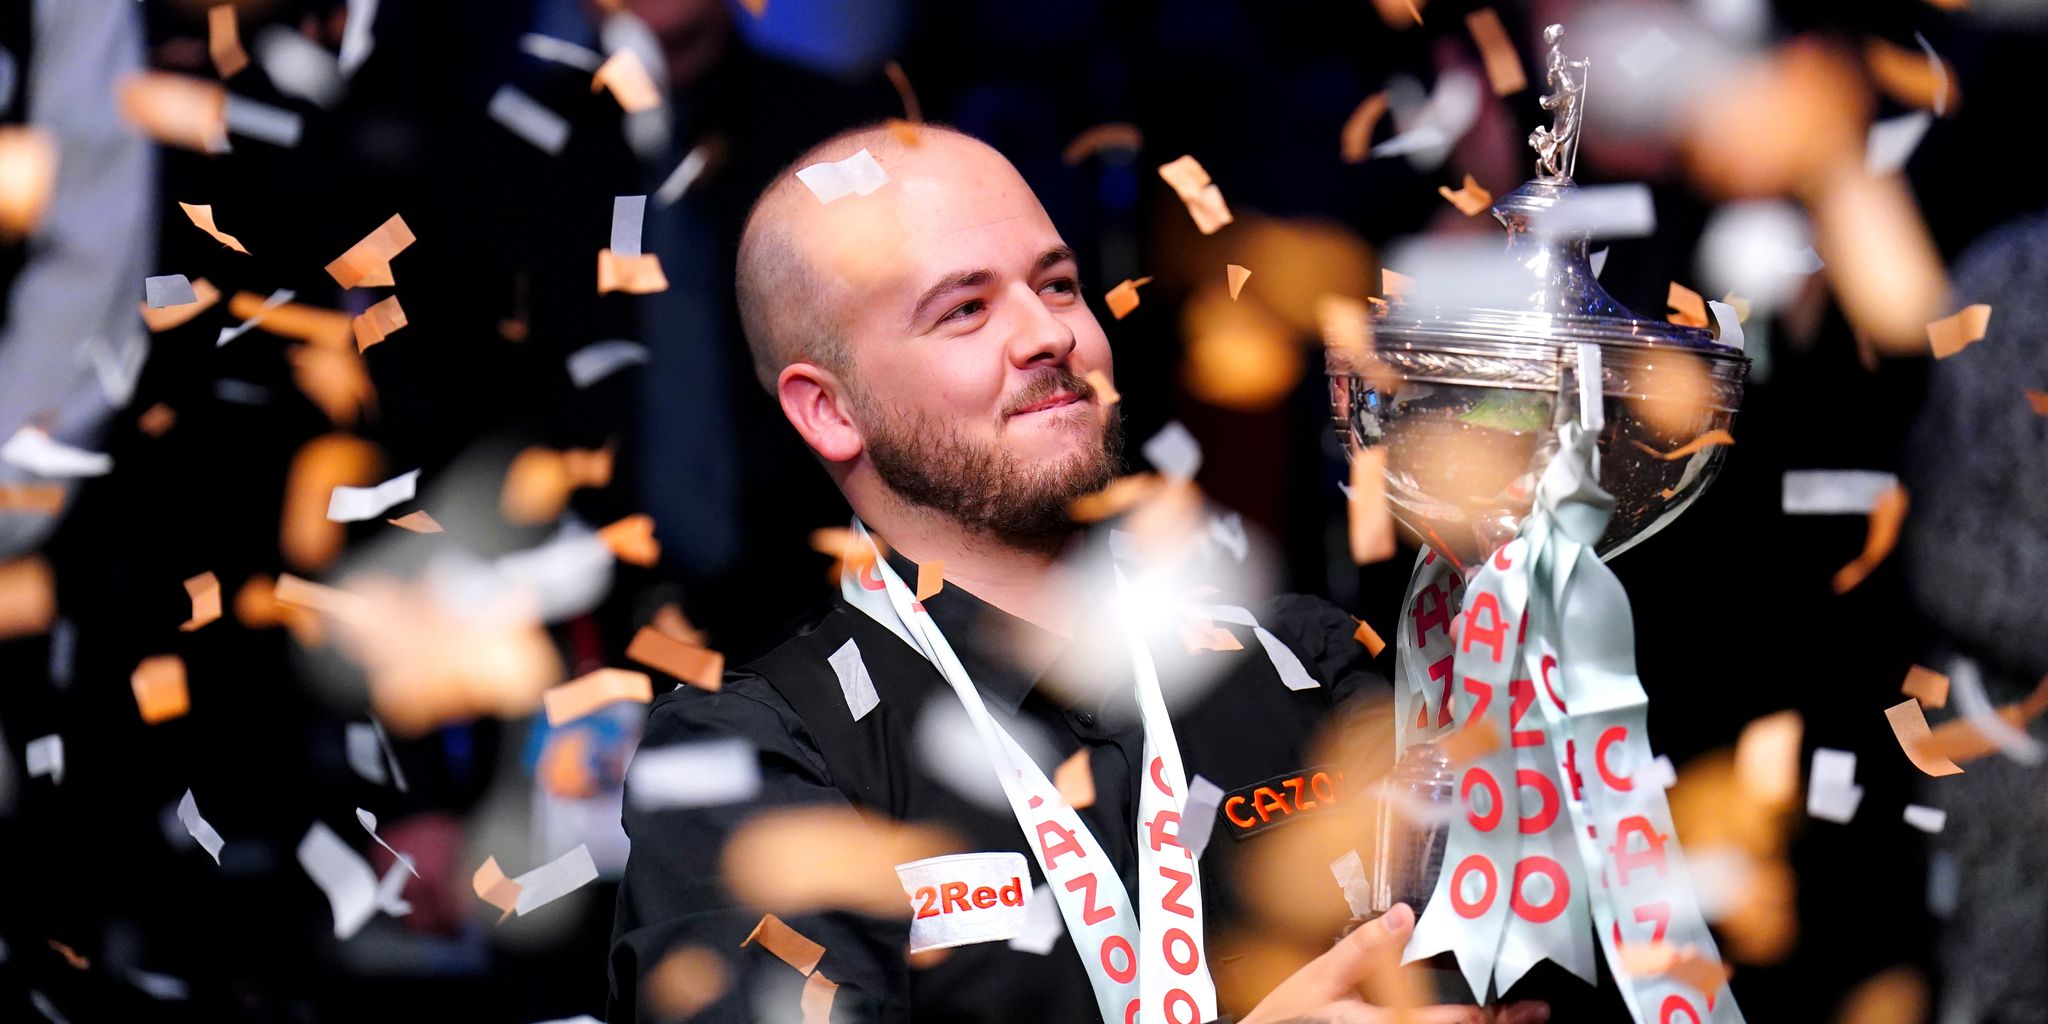 Luca Brecel ist der neue Snooker-Weltmeister.